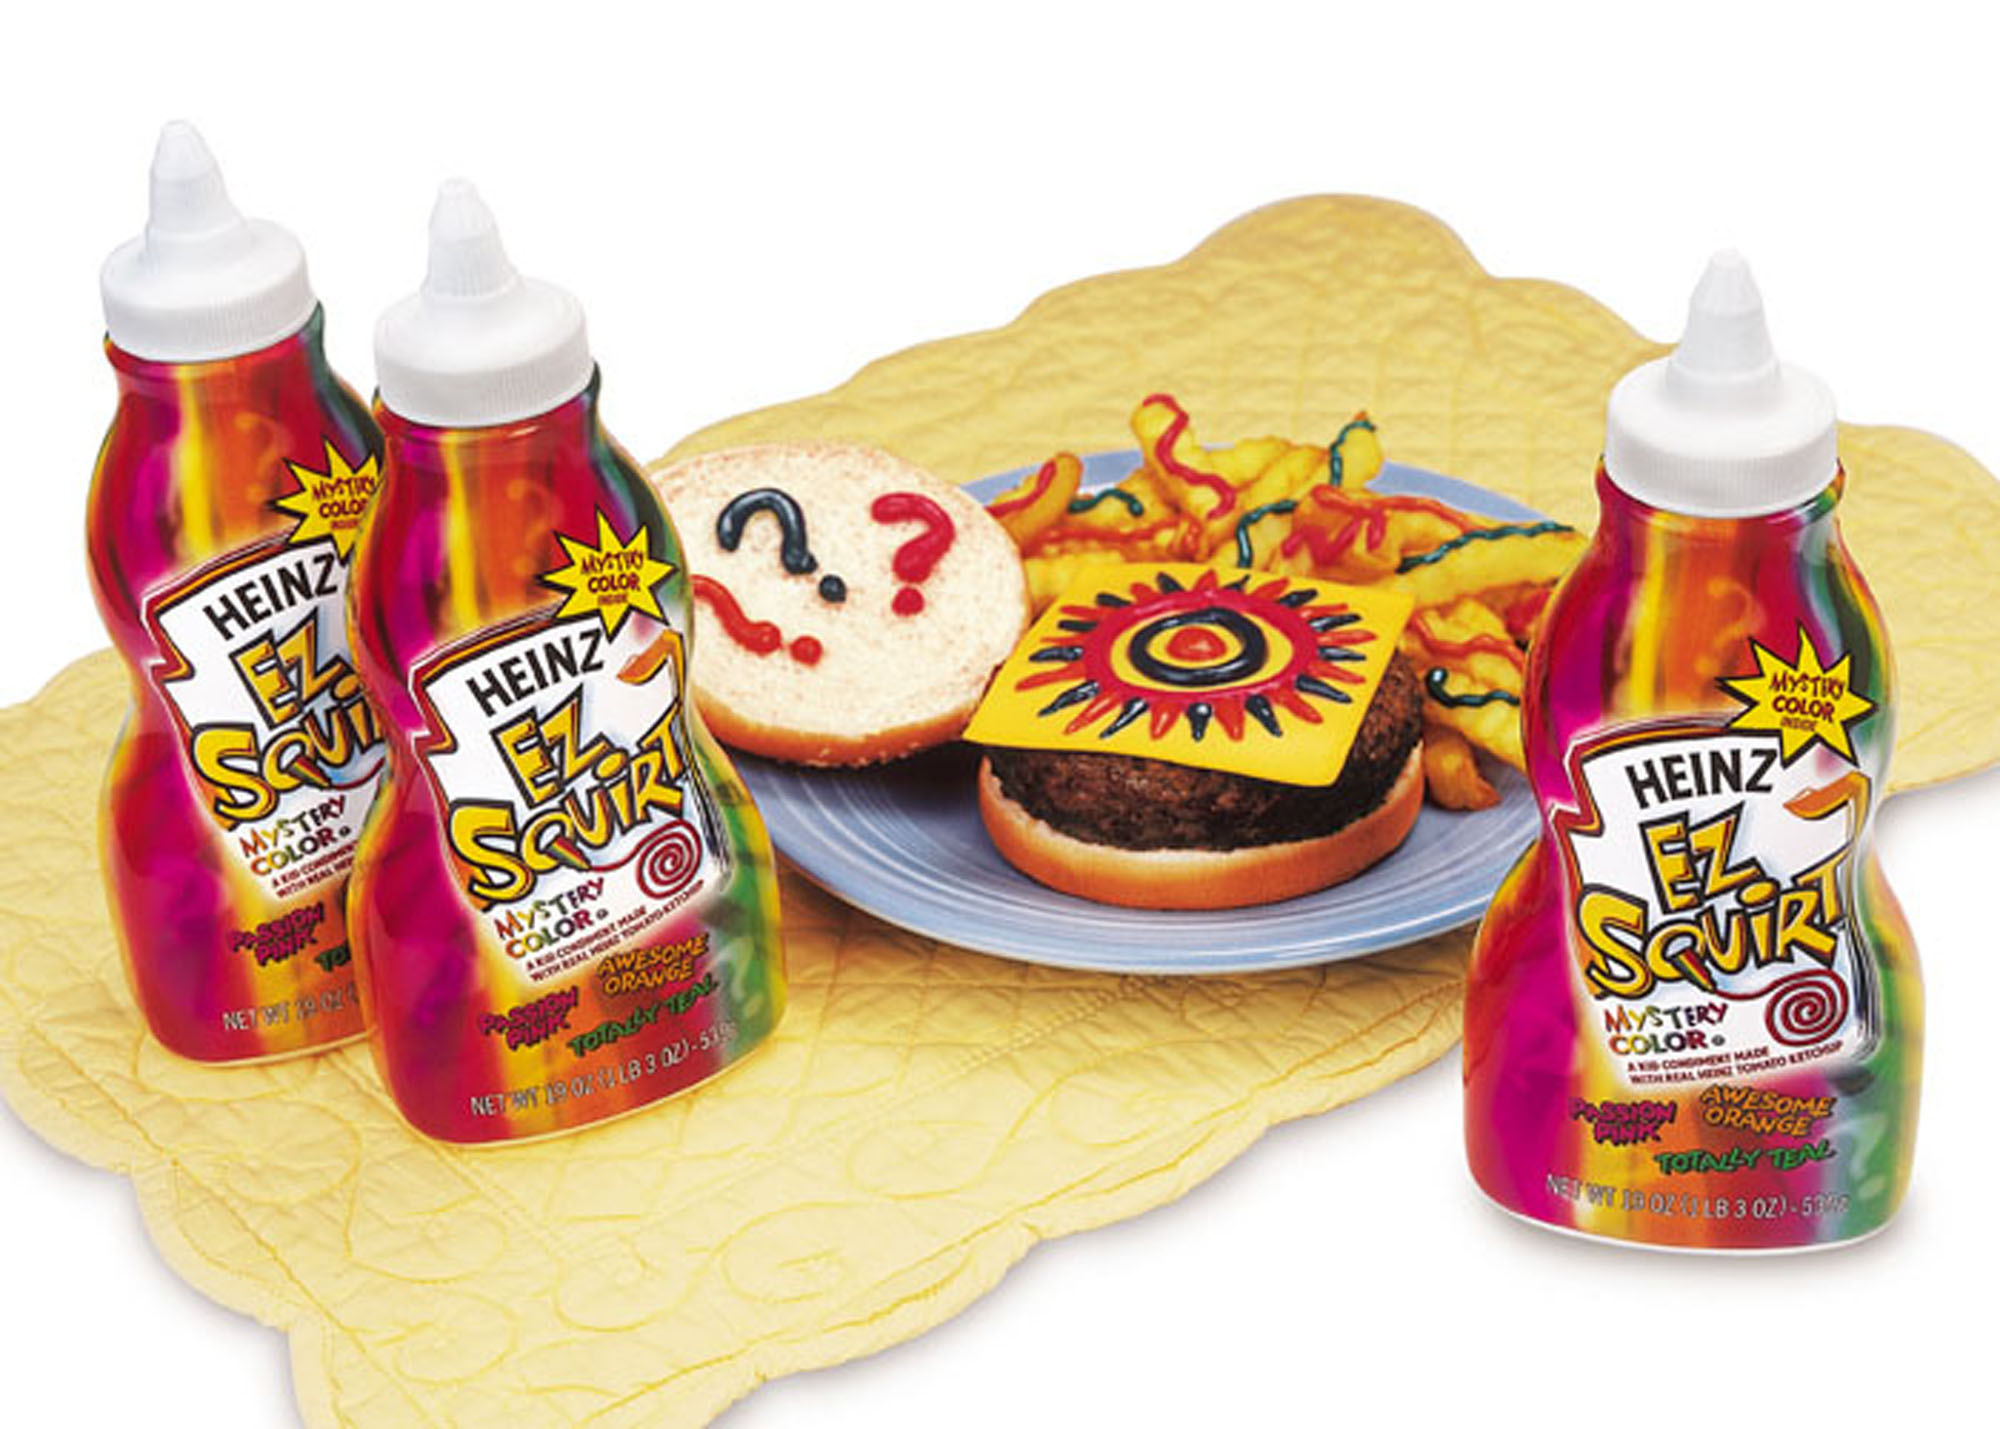 Great products. Кетчуп Heinz. Цветной кетчуп. Разноцветный кетчуп от Heinz. Кетчуп 2000х.